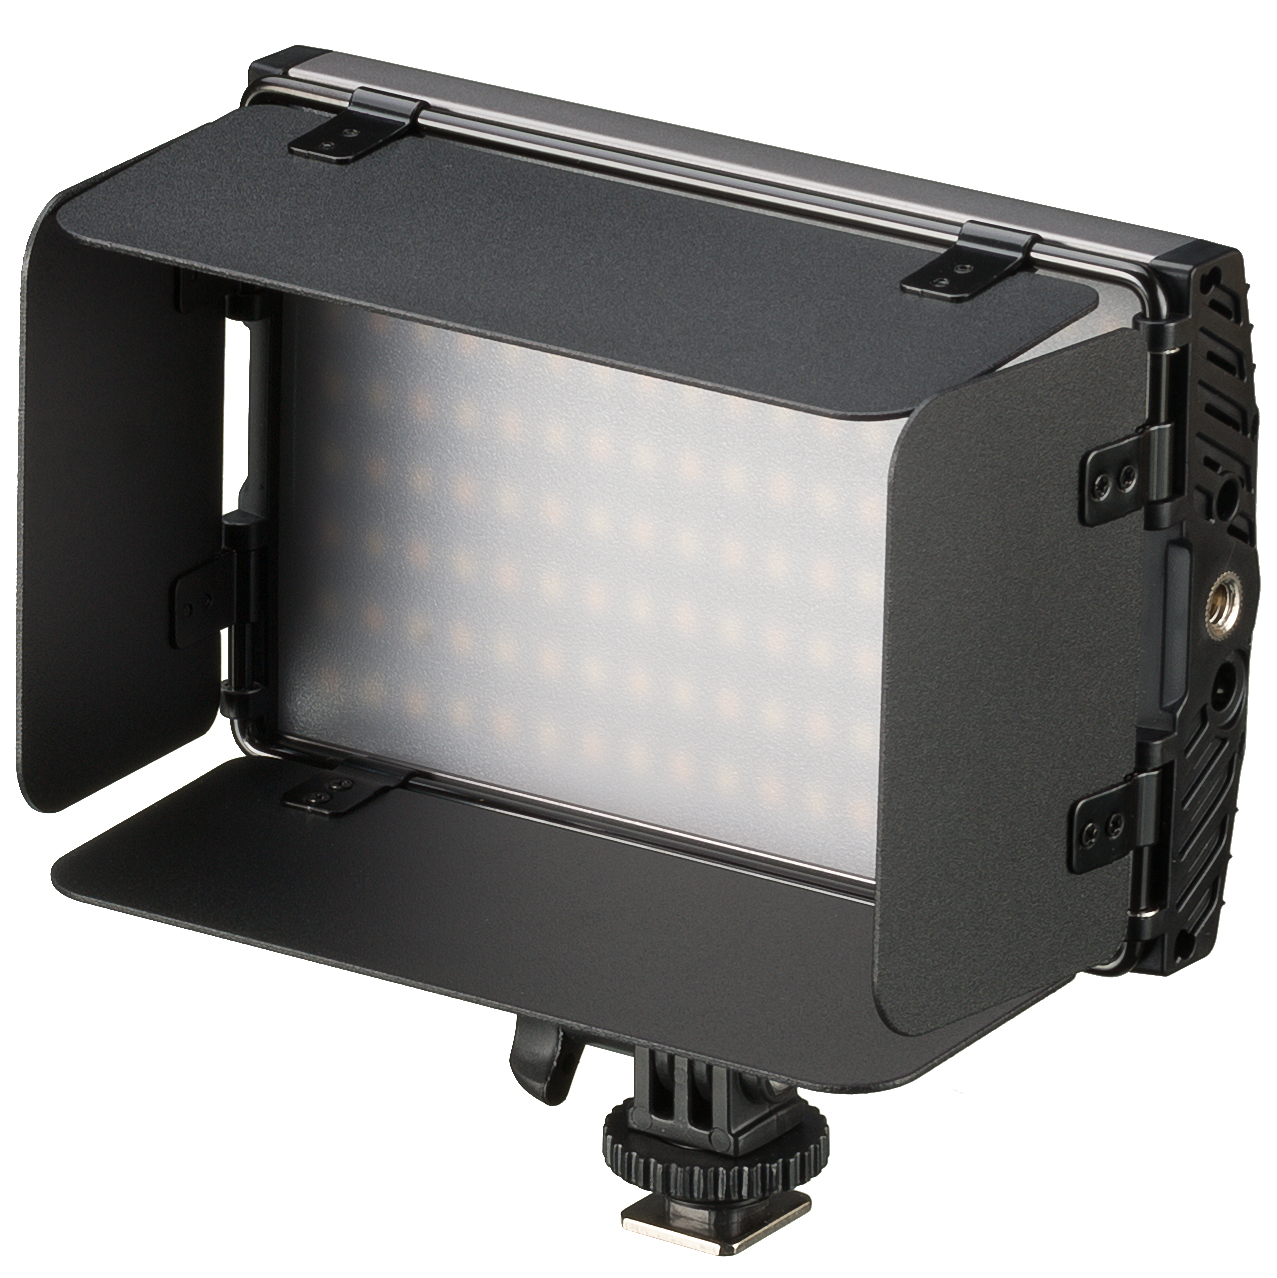 Pannello luminoso a LED bicolore BRESSER PT Pro 15B-II con alette frangiluce, batteria e custodia